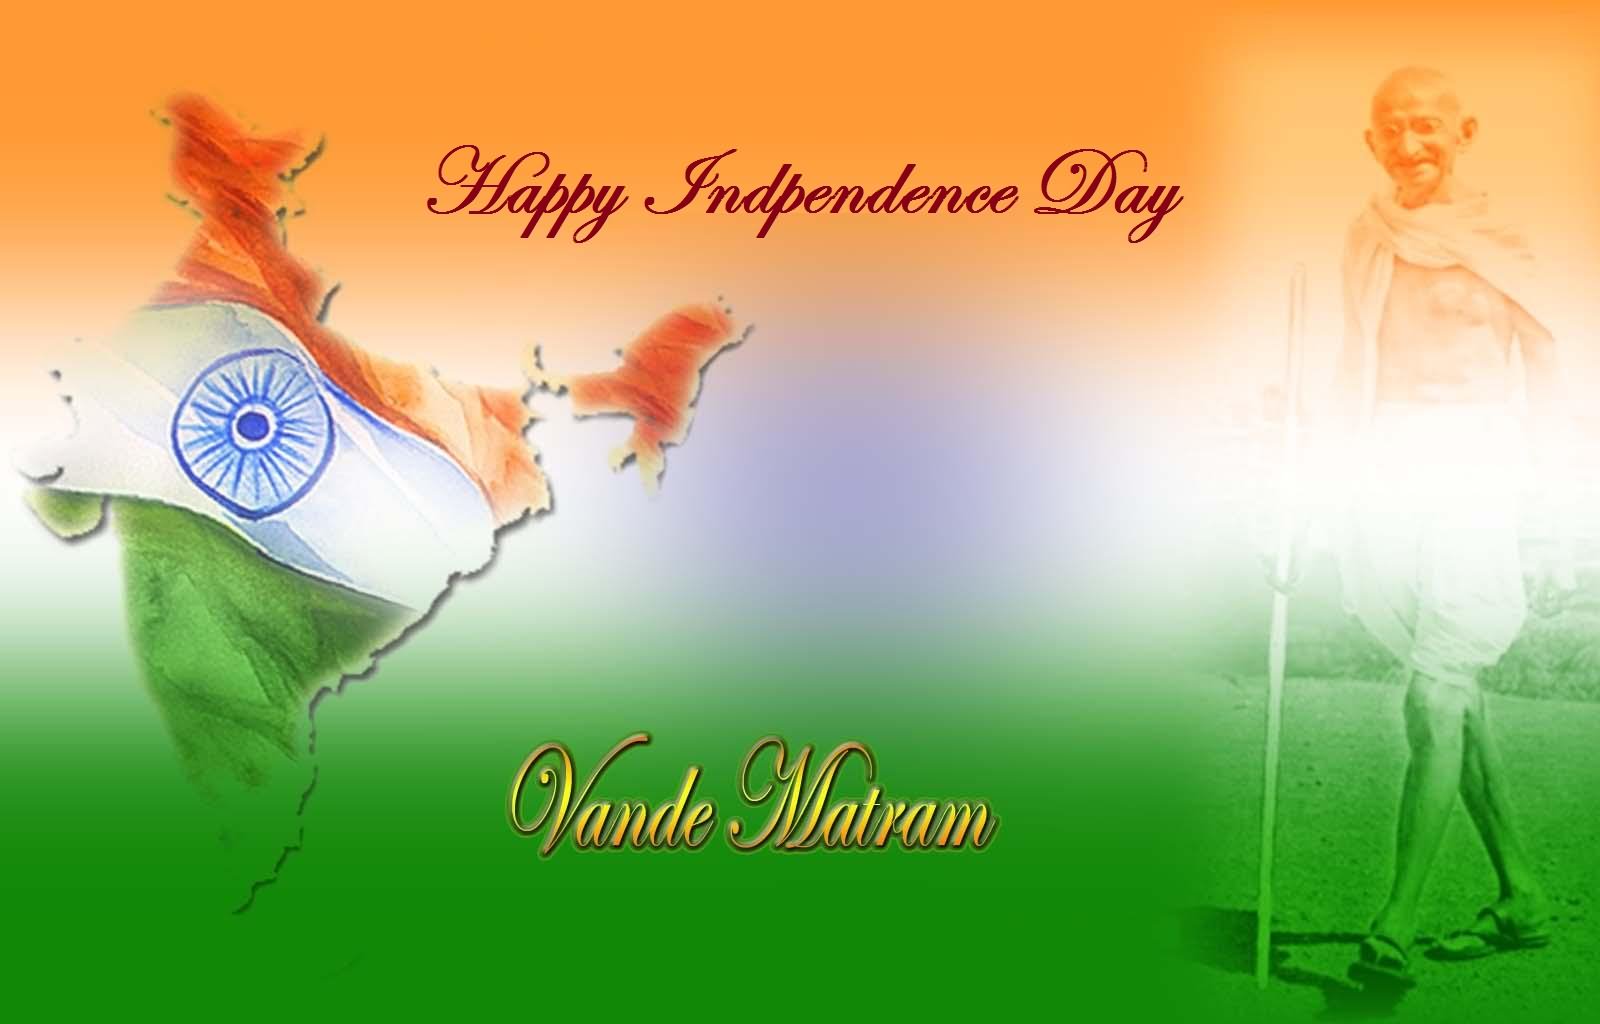 Happy Independence Day Vande Matram